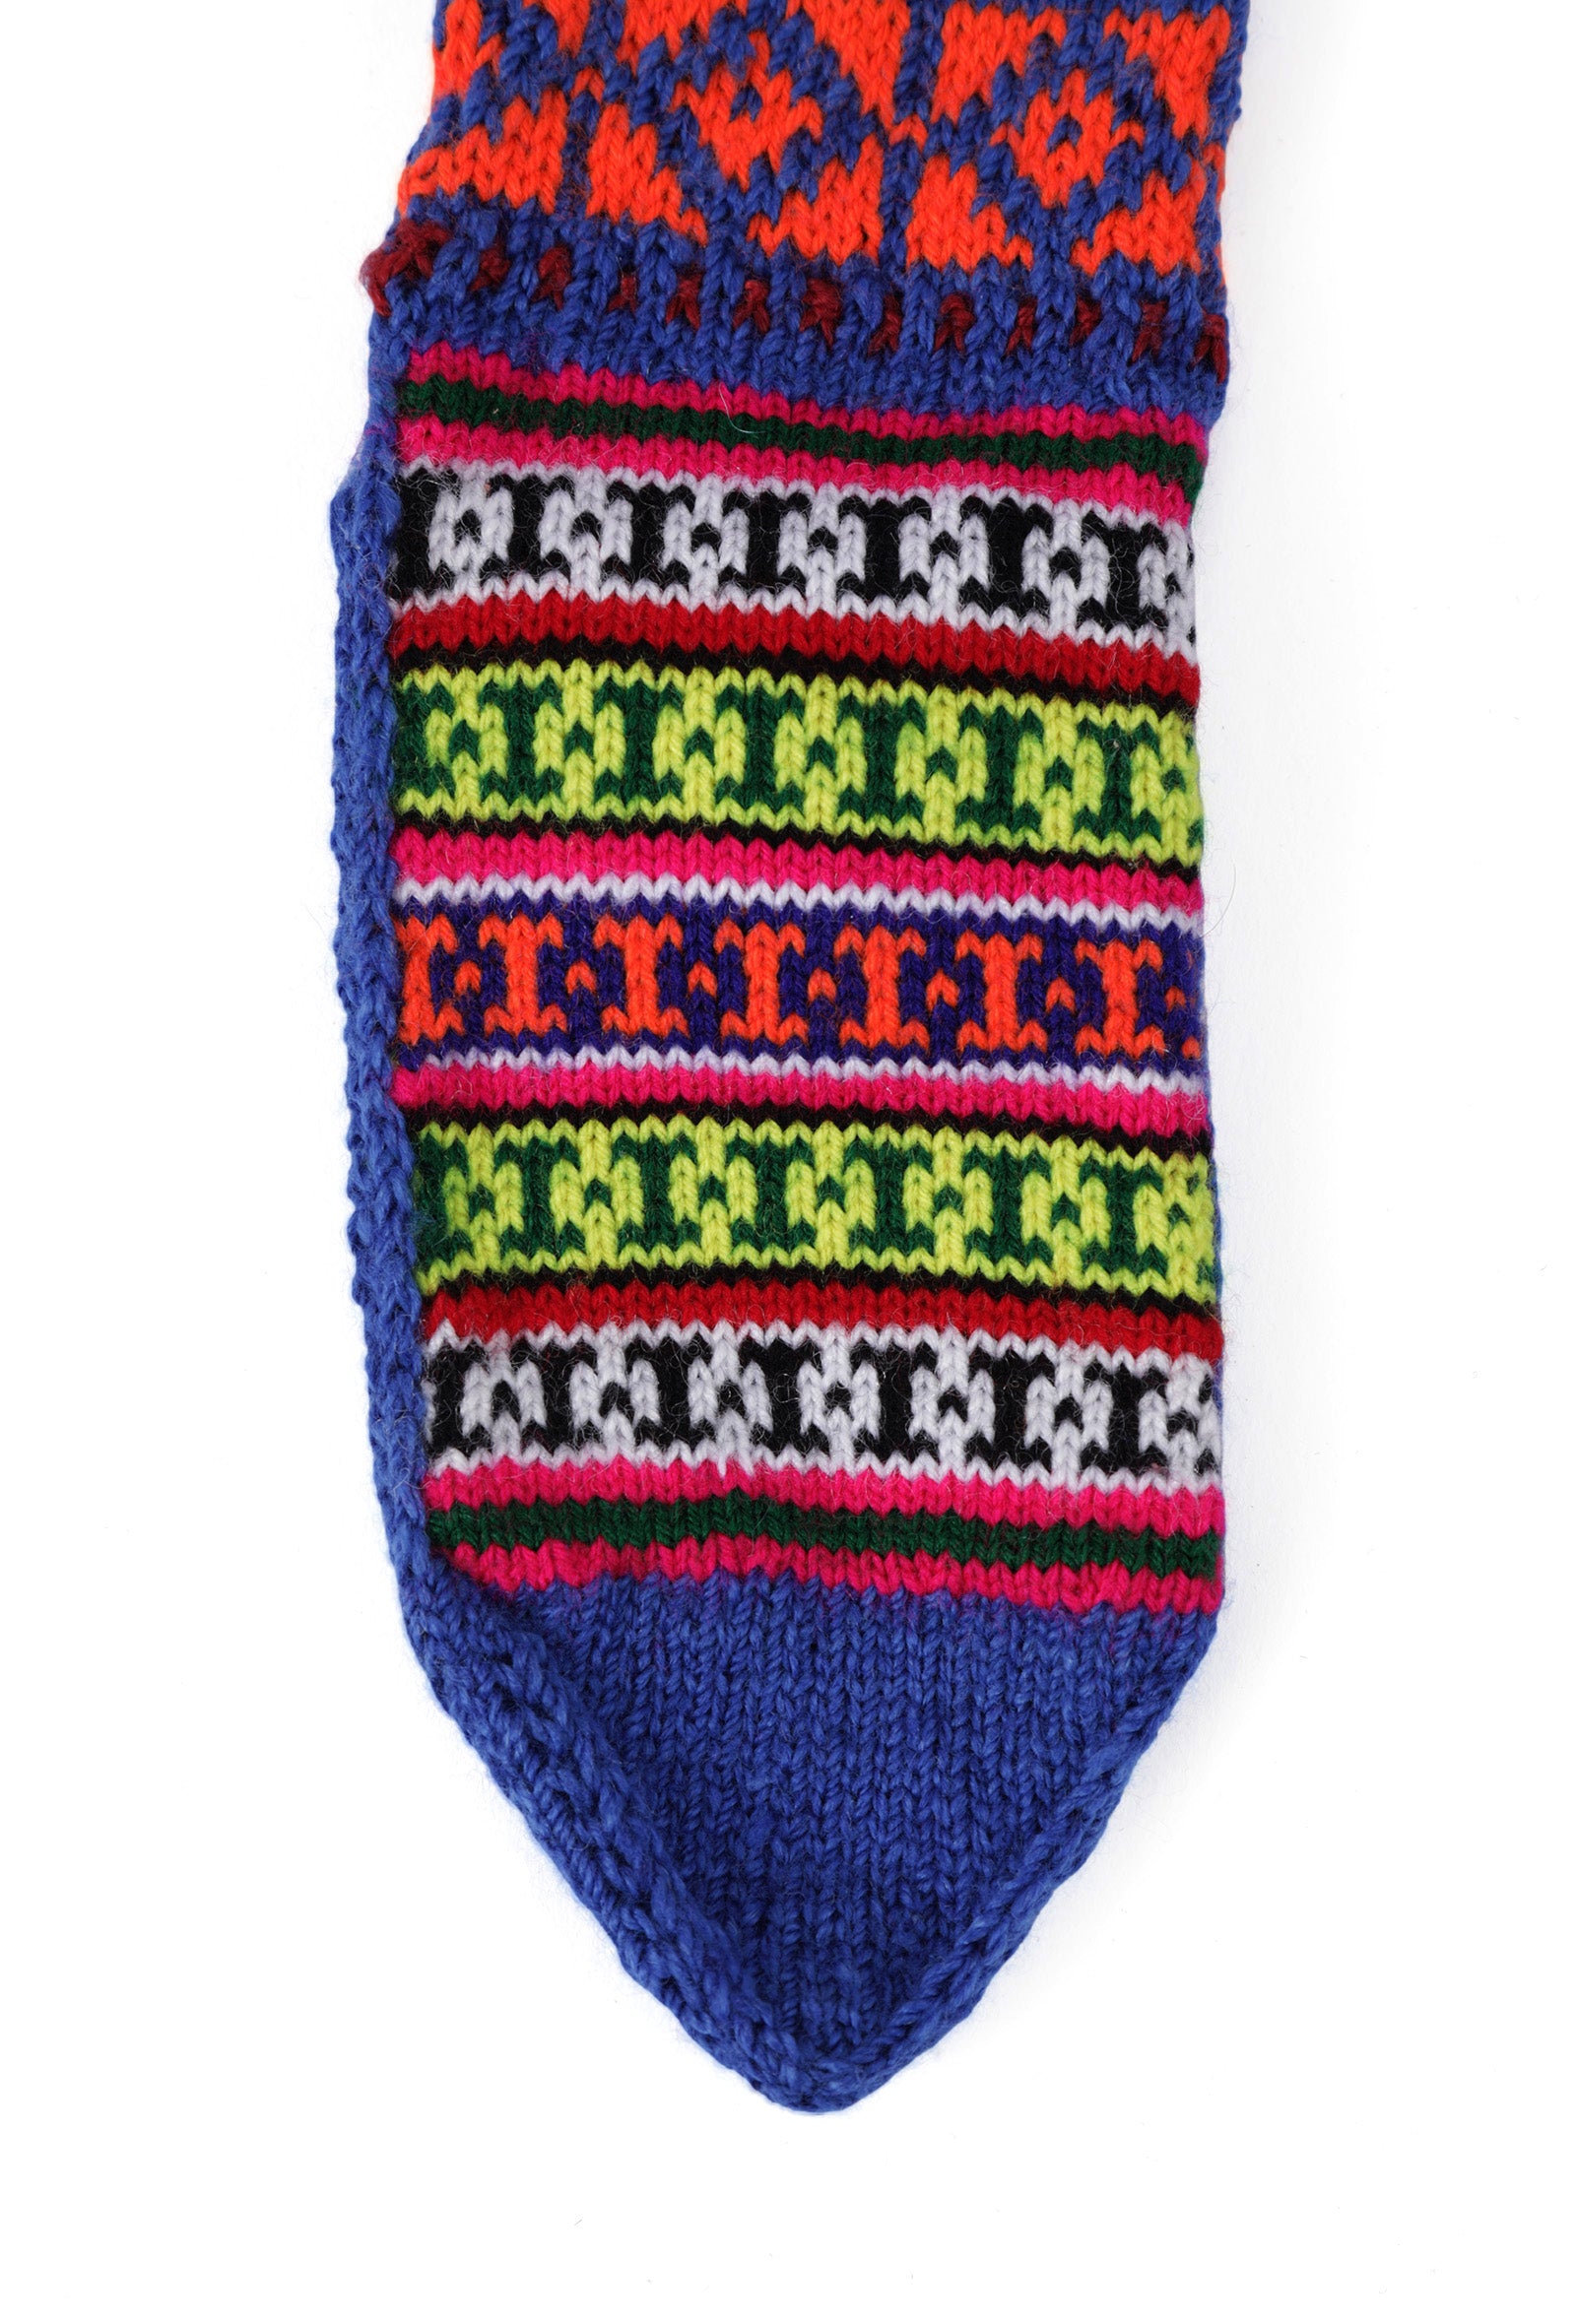 Azure Blue & Multi Hand Knitted Woolen Winter Socks